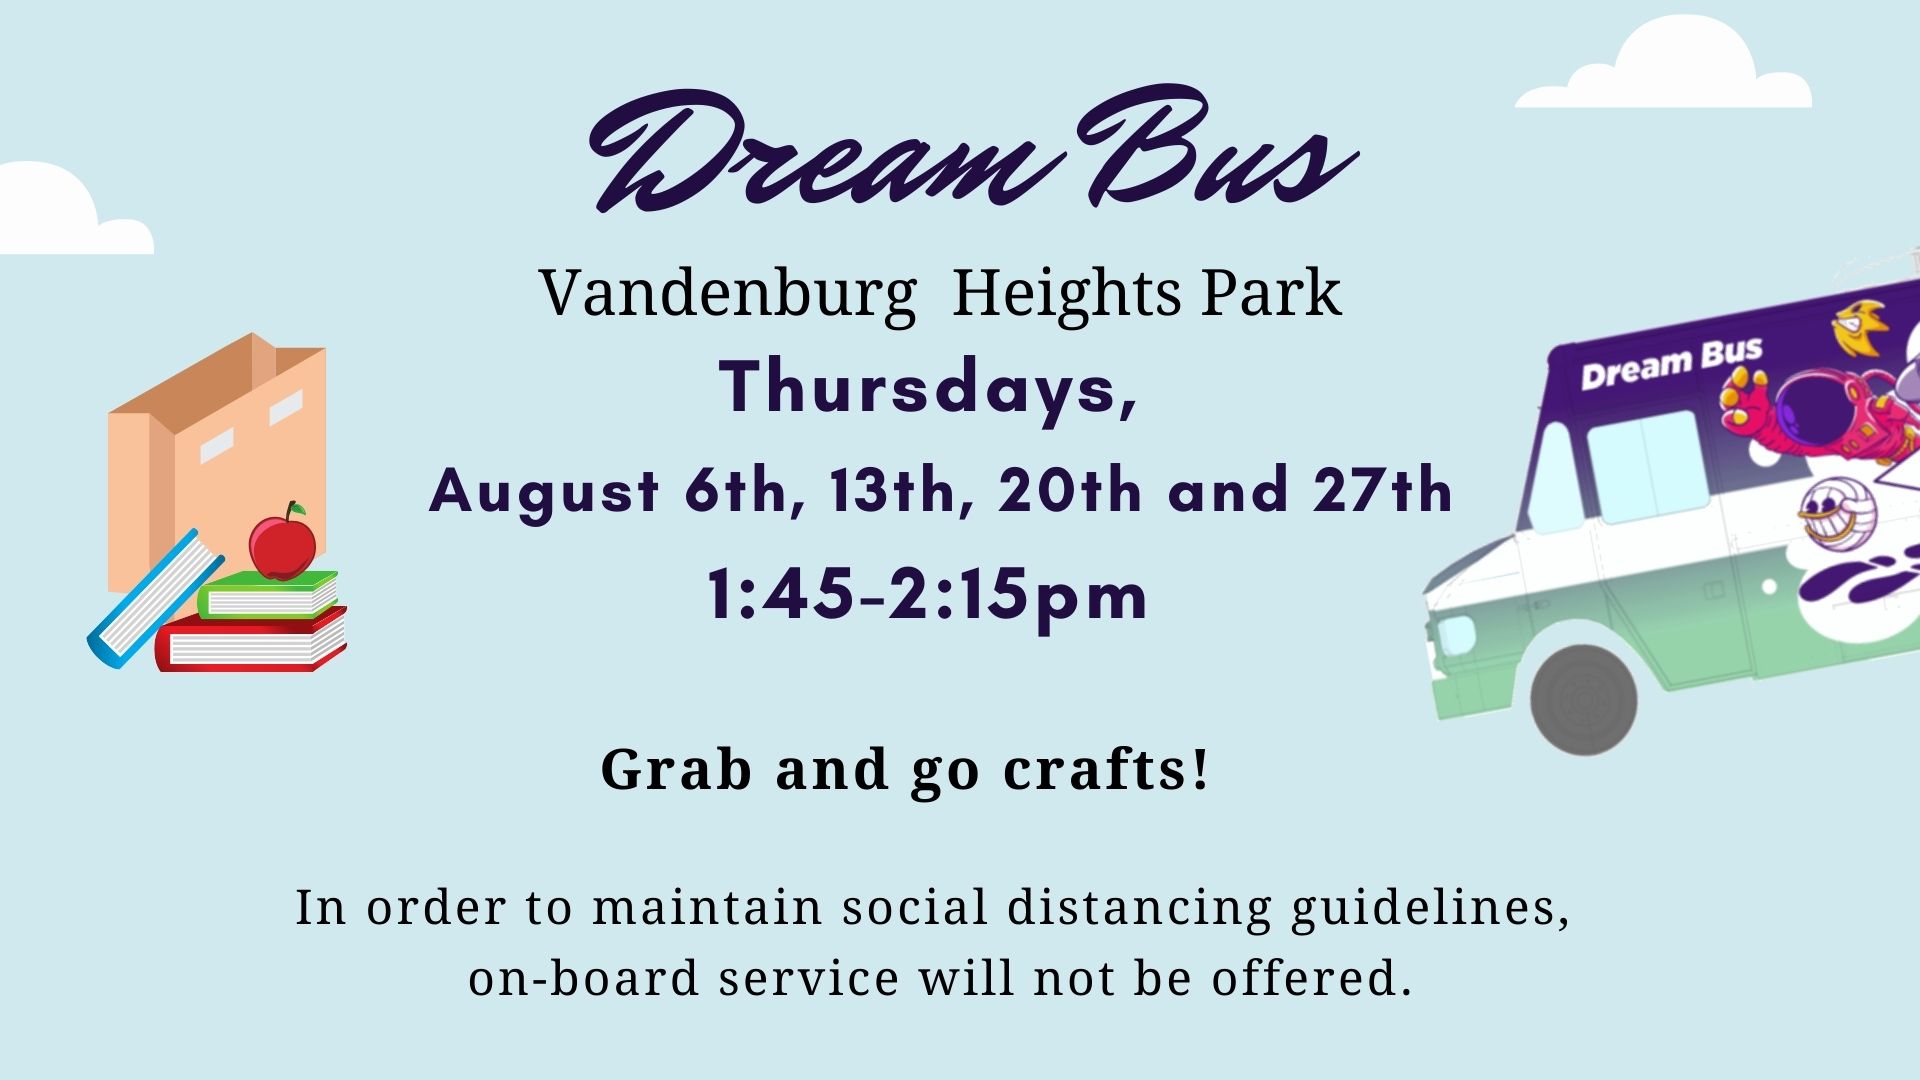 Dream Bus at Vandenburg Heights Park